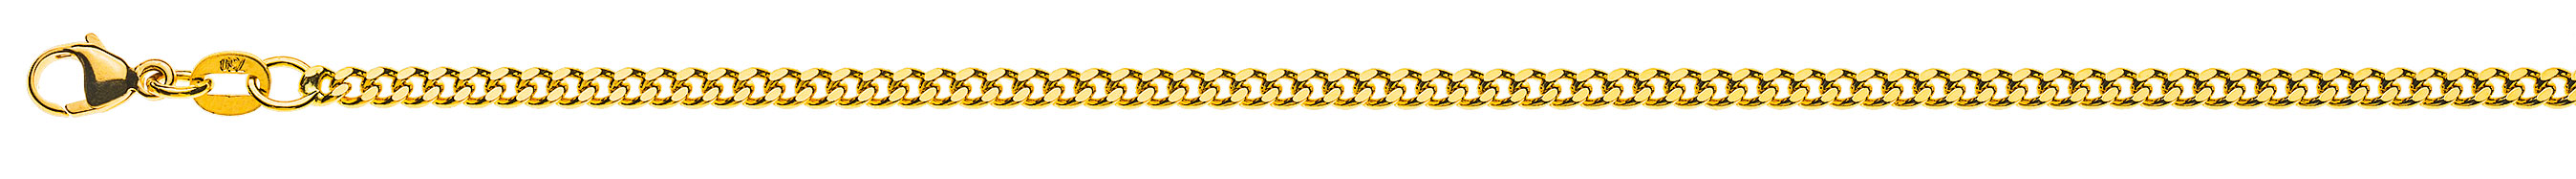 AURONOS Prestige Halskette Gelbgold 18K Panzerkette geschliffen 55cm 2.6mm